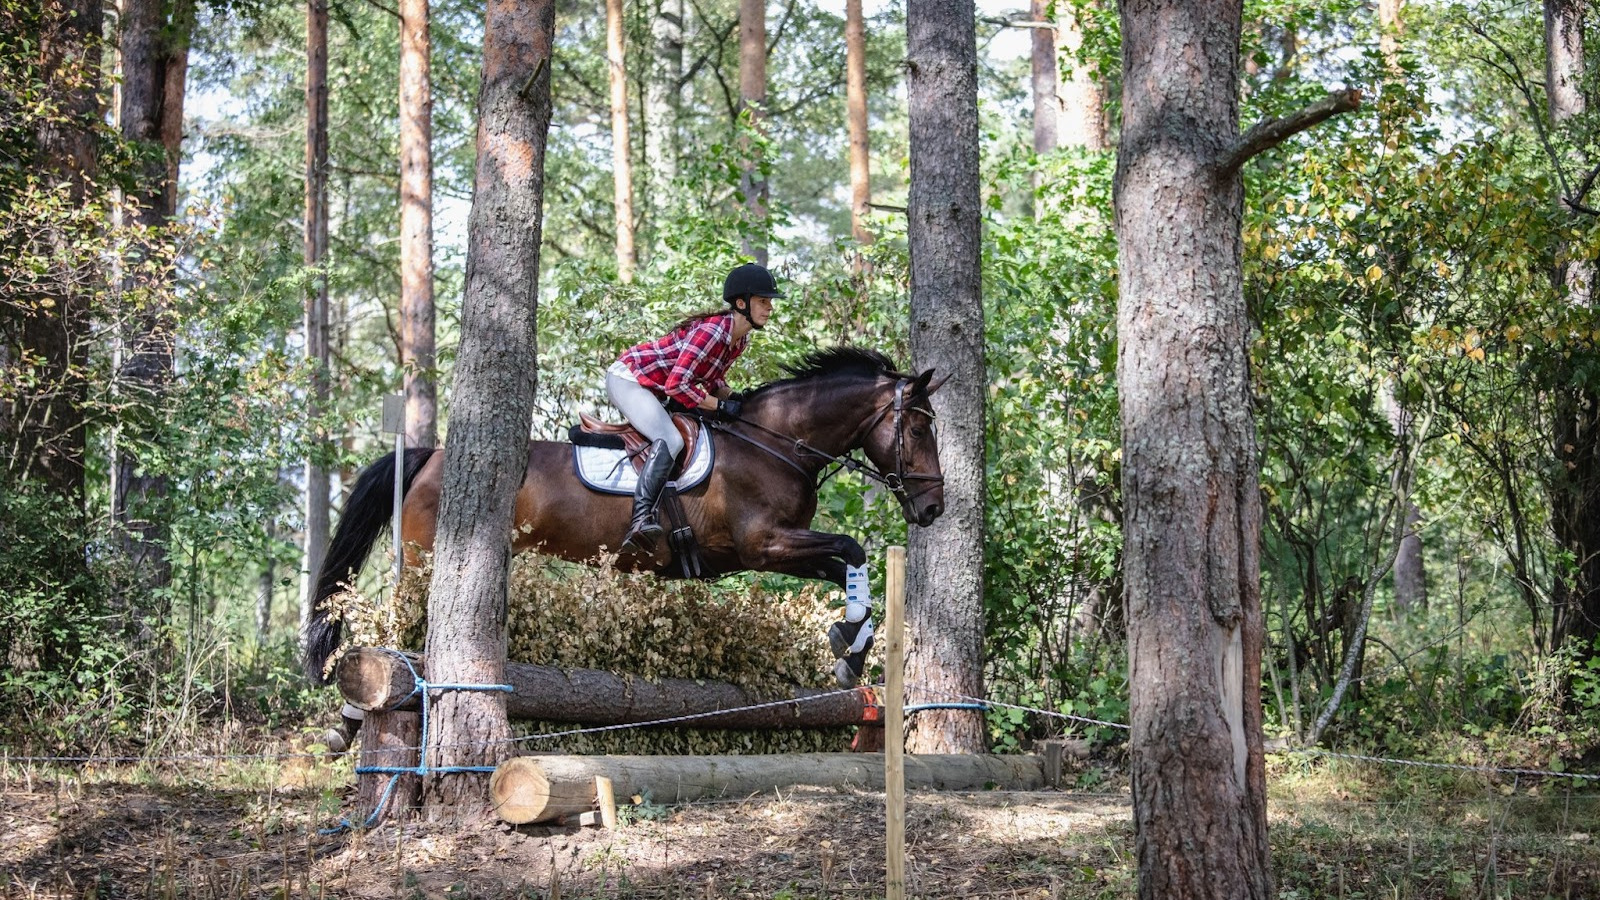 Kuvassa on Olga Temonen ratsastamassa metsässä.  Hevonen on ruskea.